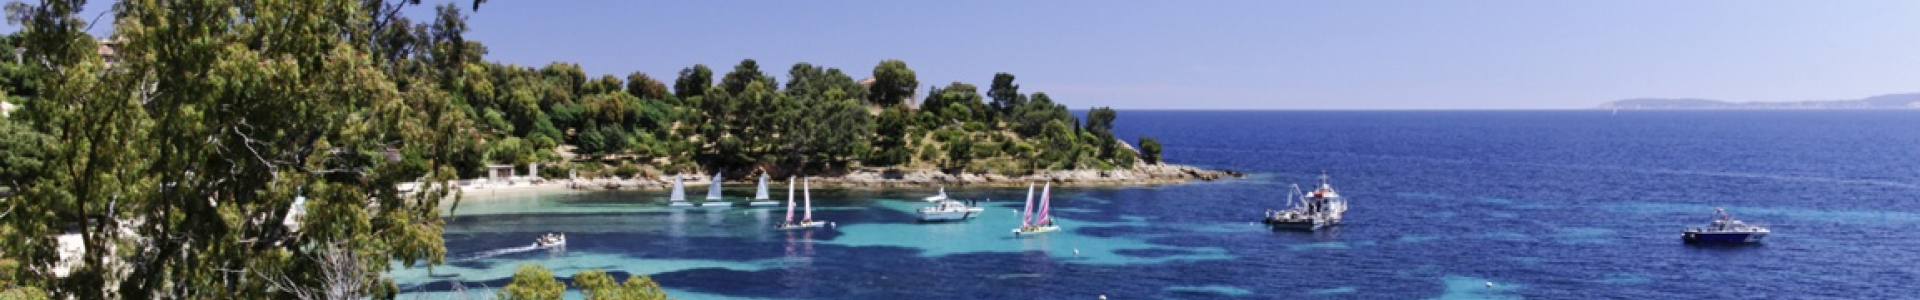 Voyage Privé : ventes flash, Provence Côte d'Azur, week-ends en hôtels 4*, 1 à 7 nuits, jusqu'à - 58%